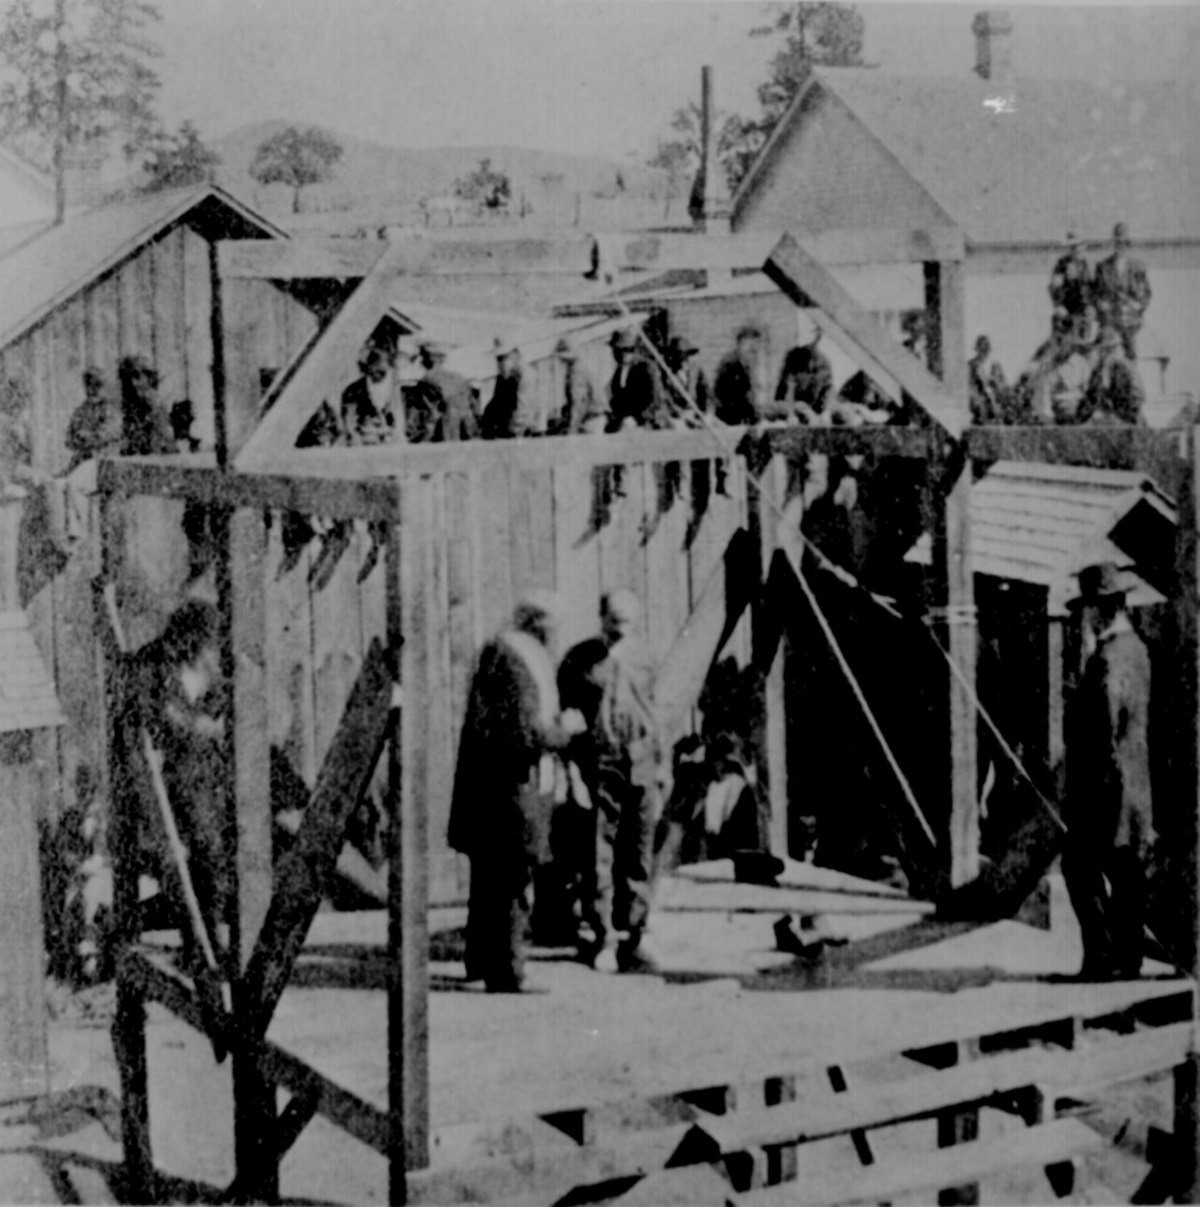 عملية إعدام أحد المجرمين شنقا في (بريسكوت) في (أريزونا) سنة 1877.